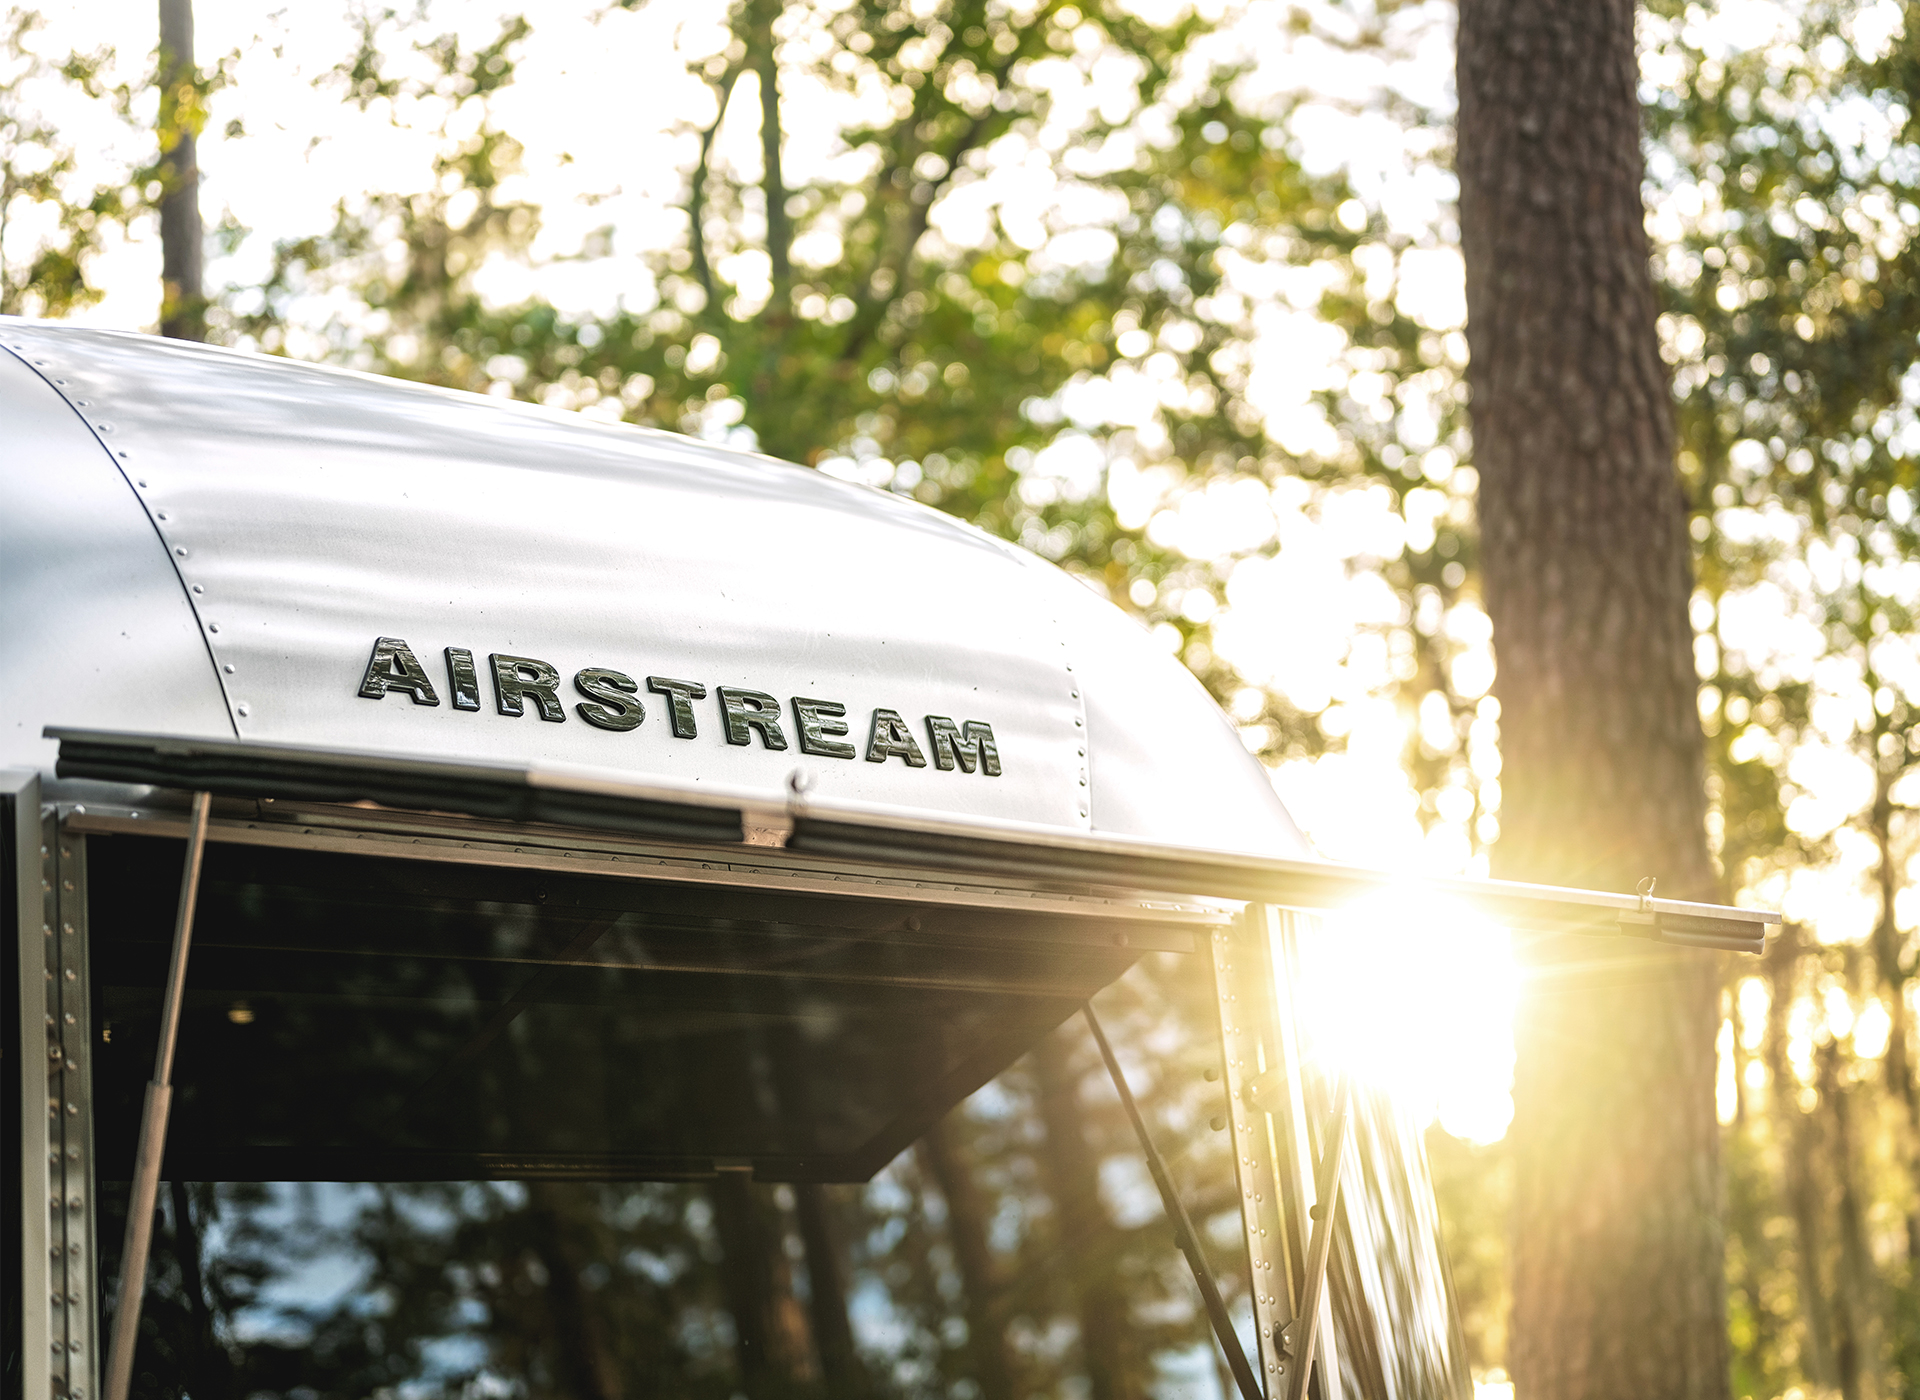 Airstream-Travel-Trailer-Badge-in-Sunlight